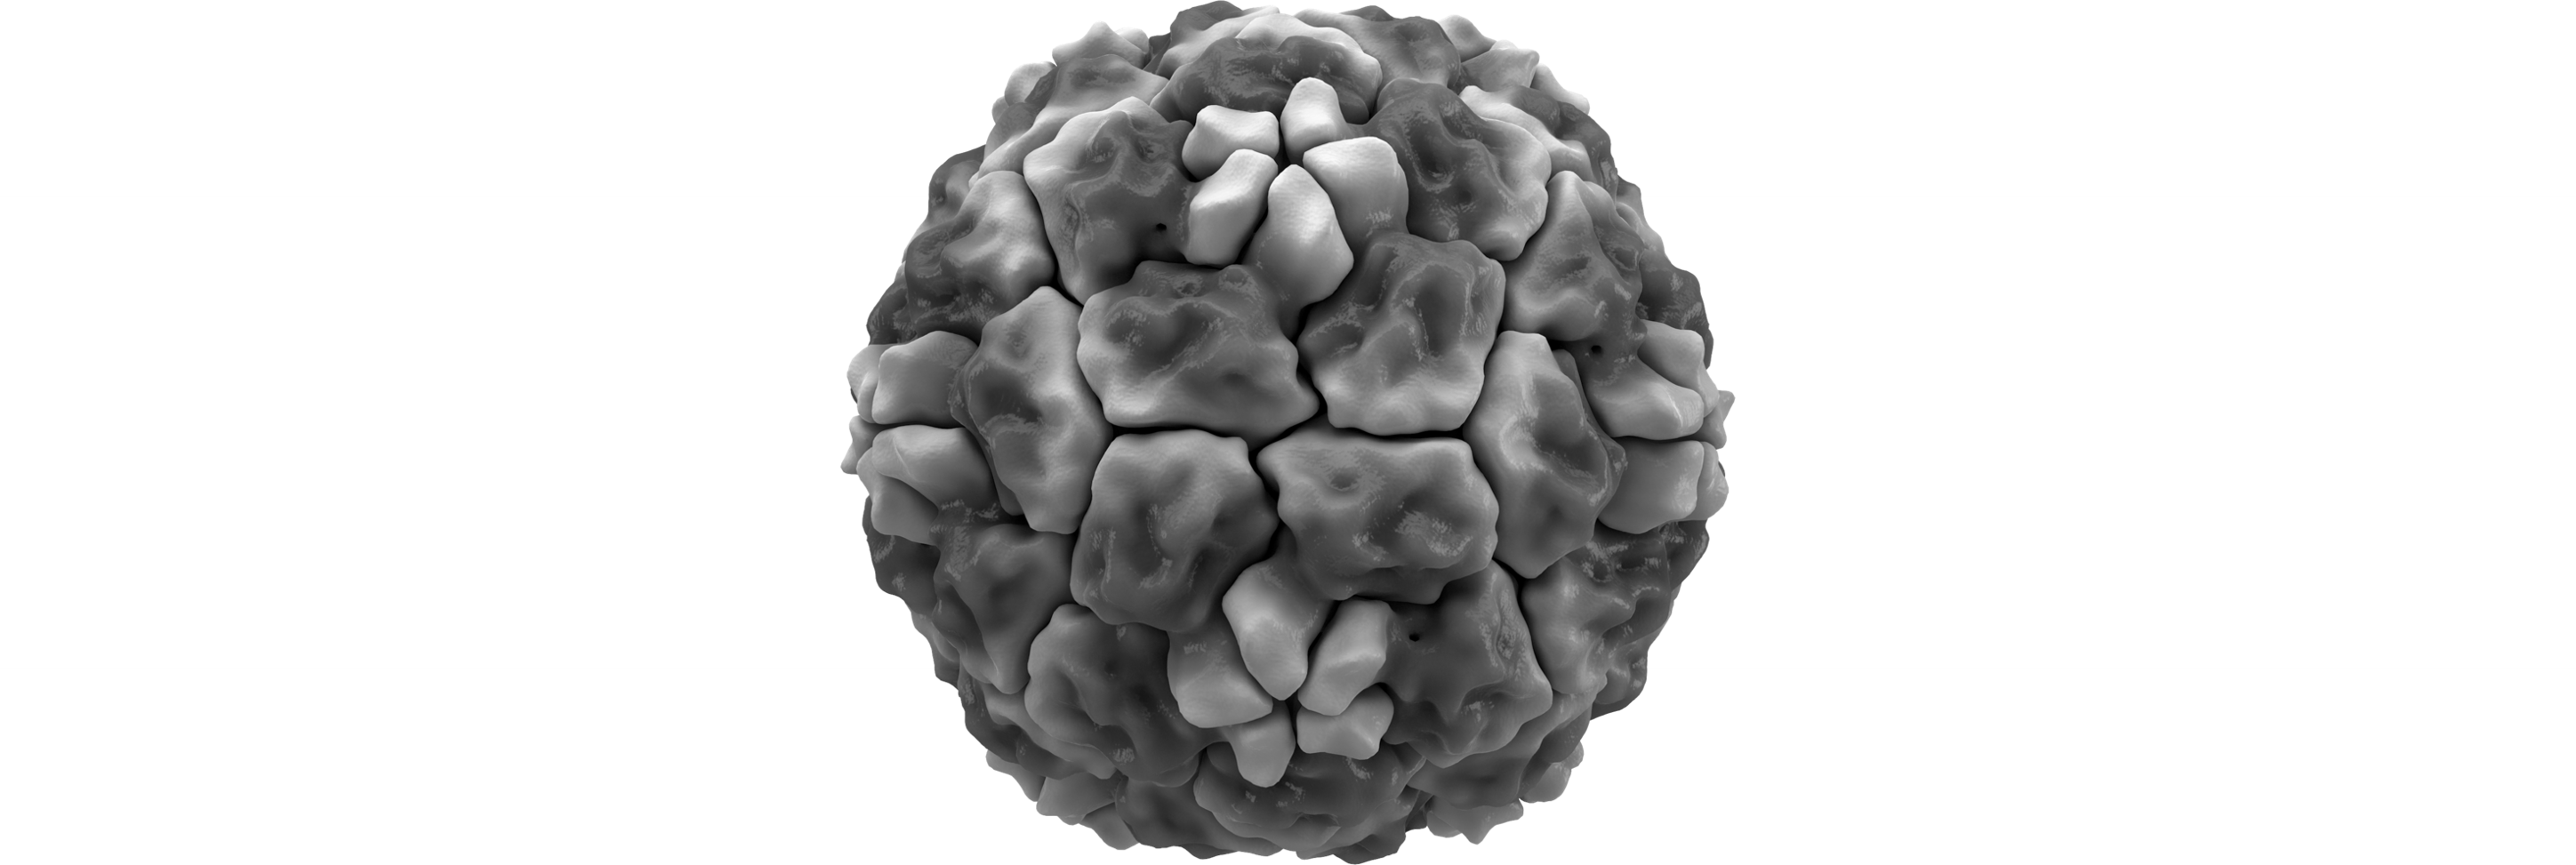 감기를 일으키는 리노바이러스의 모습입니다. 출처: Wikimedia Commons/Thomas Splettstoesser, File:Rhinovirus isosurface.png, CC BY-SA 4.0.